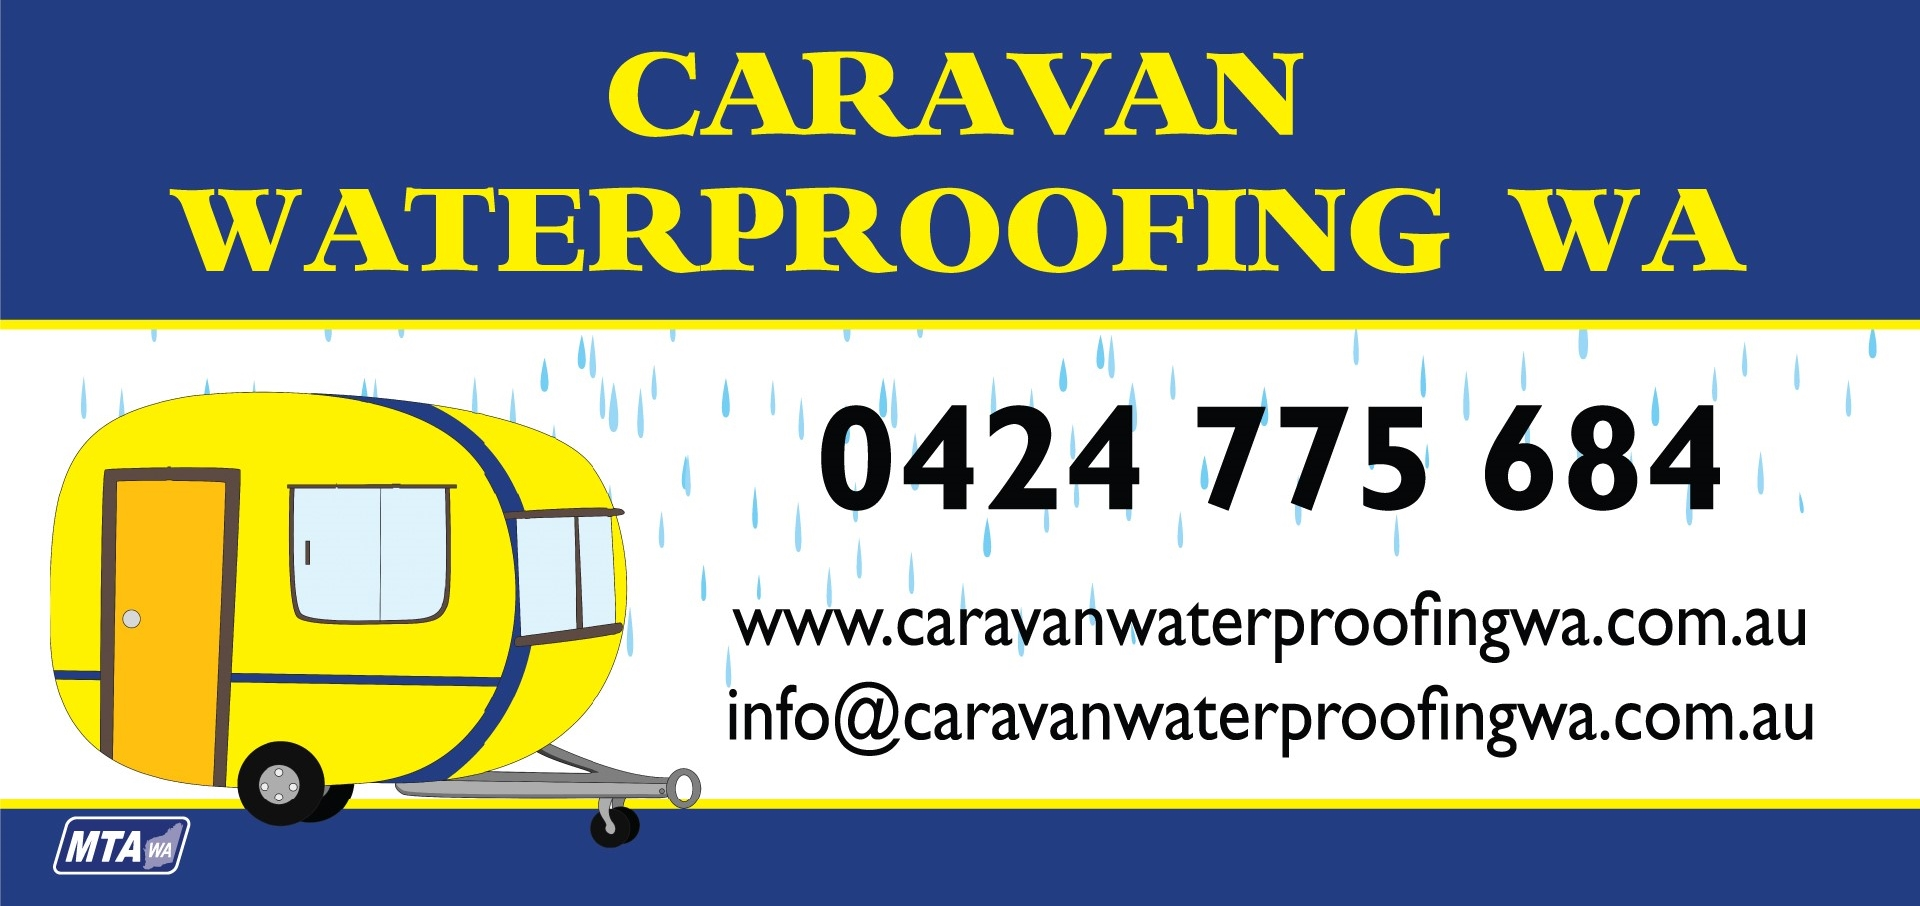 Caravan Waterproofing WA